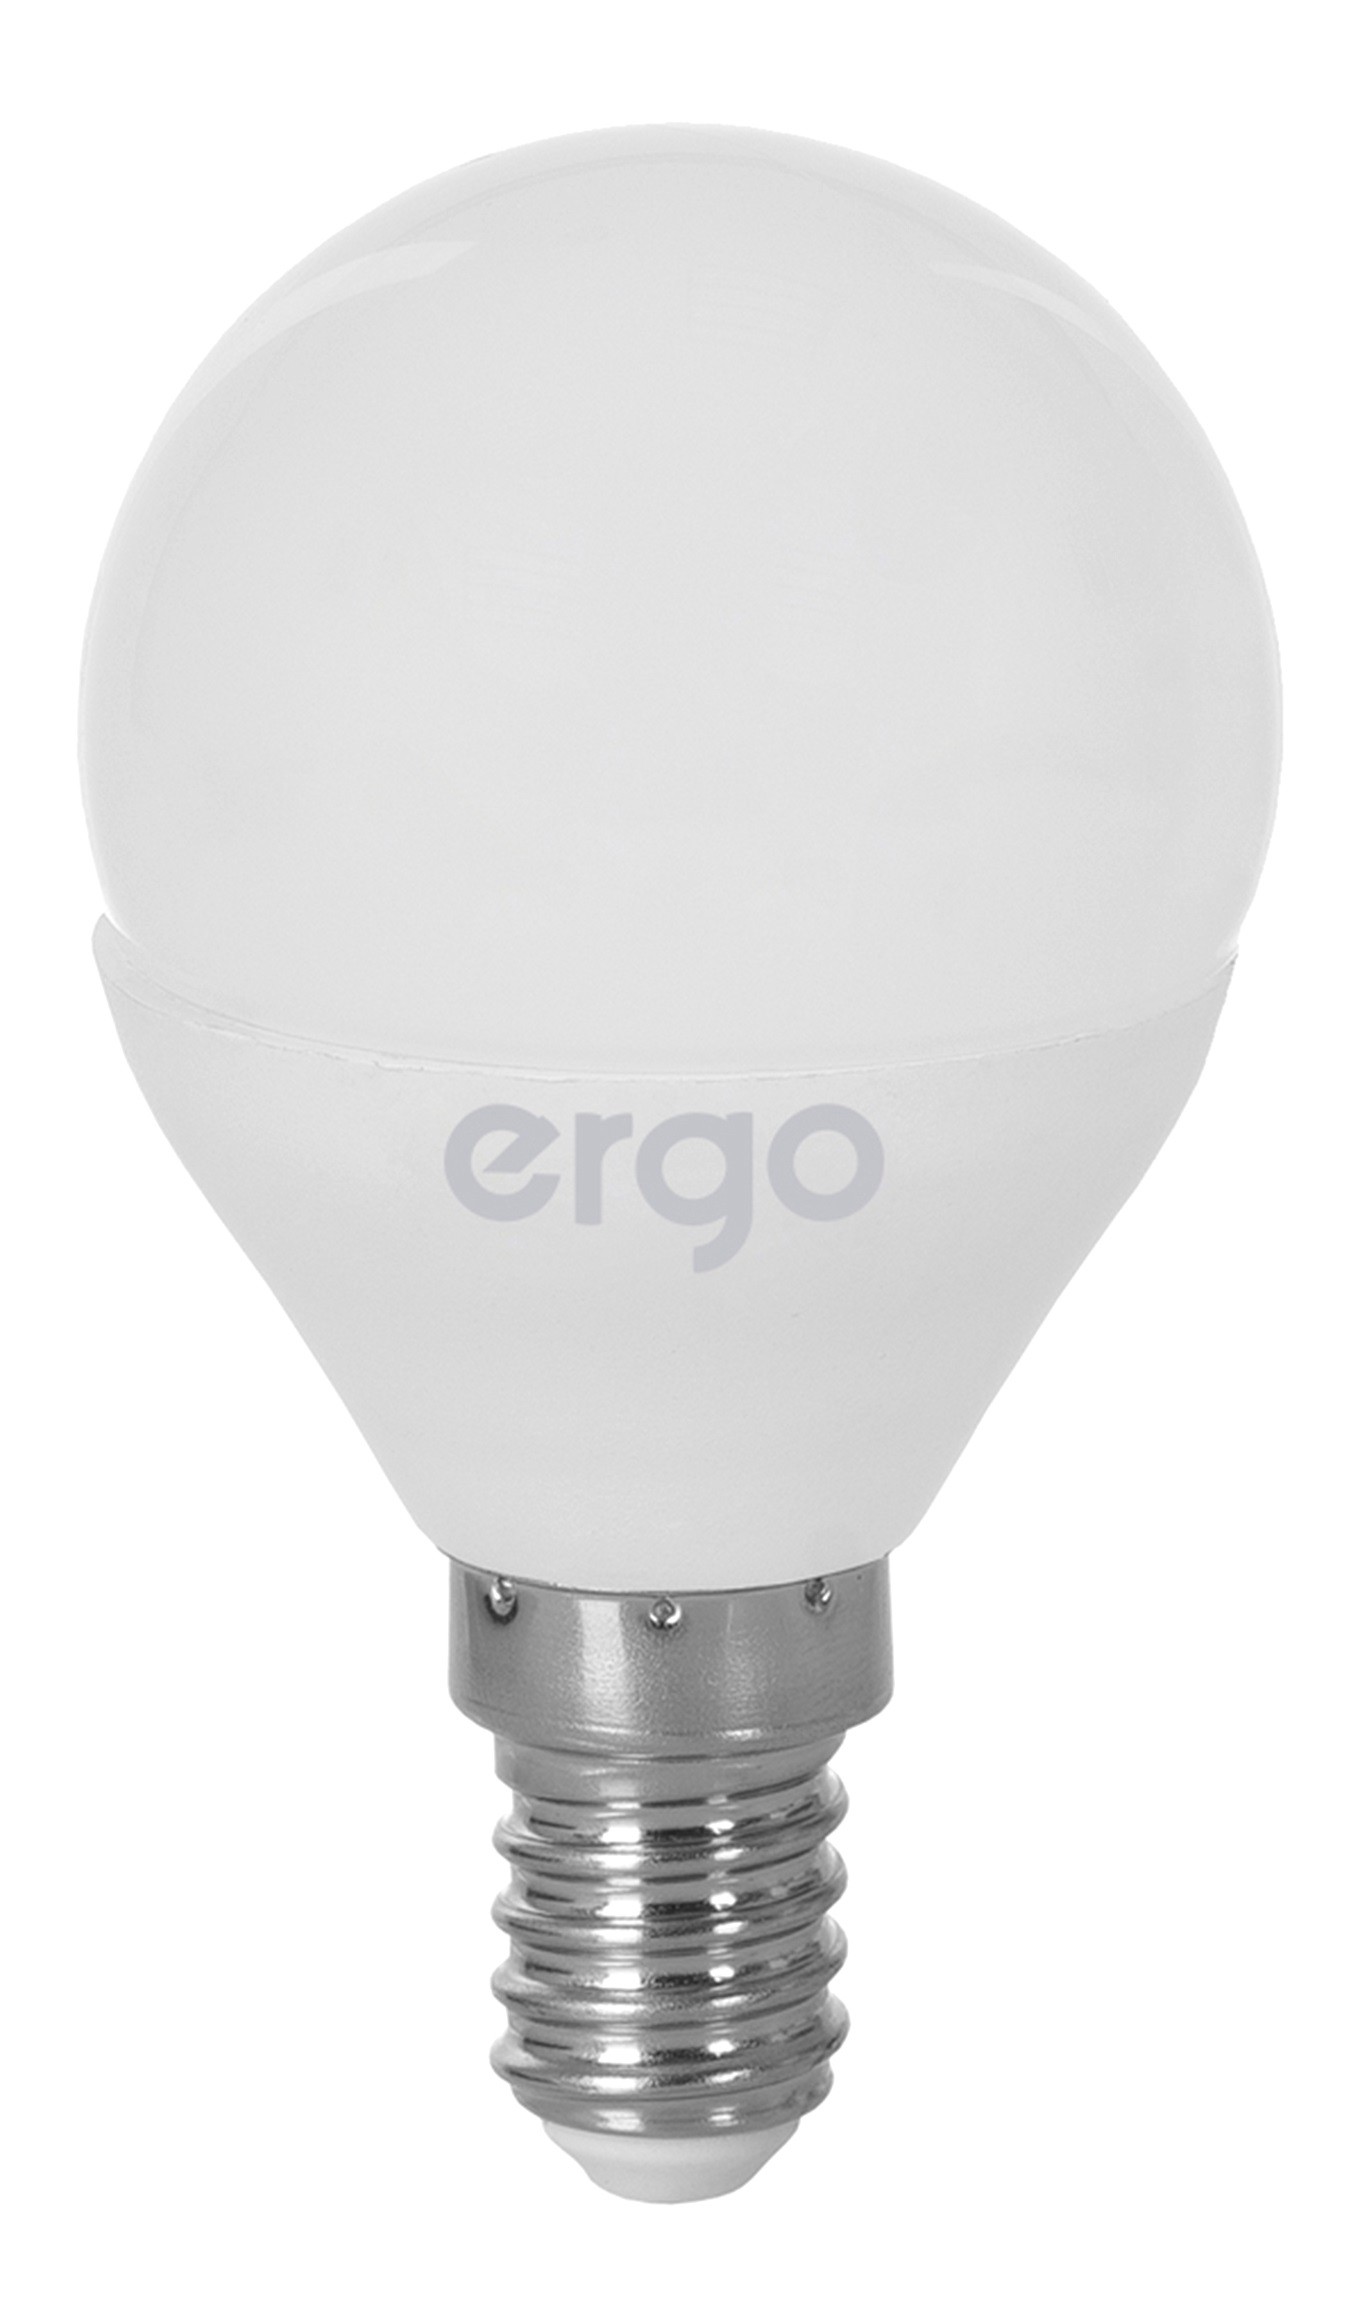 Інструкція лампа ergo світлодіодна Ergo Standard G45 e14 5w